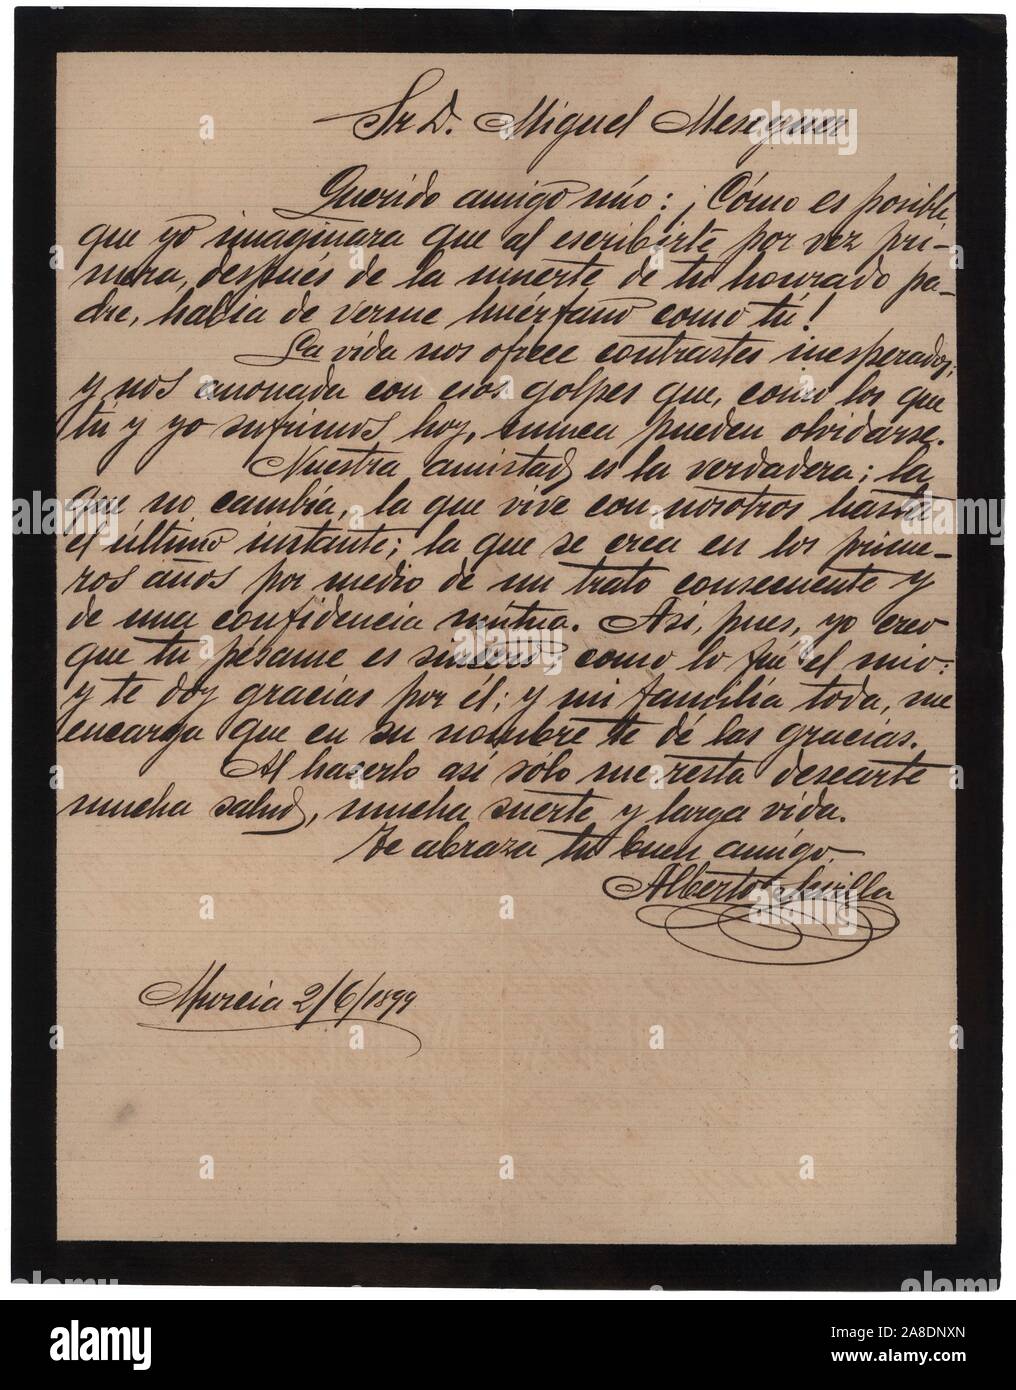 Carta con orla negra en señal de duelo comunicando el fallecimiento de un familiar. Murcia, junio de 1899. Stock Photo